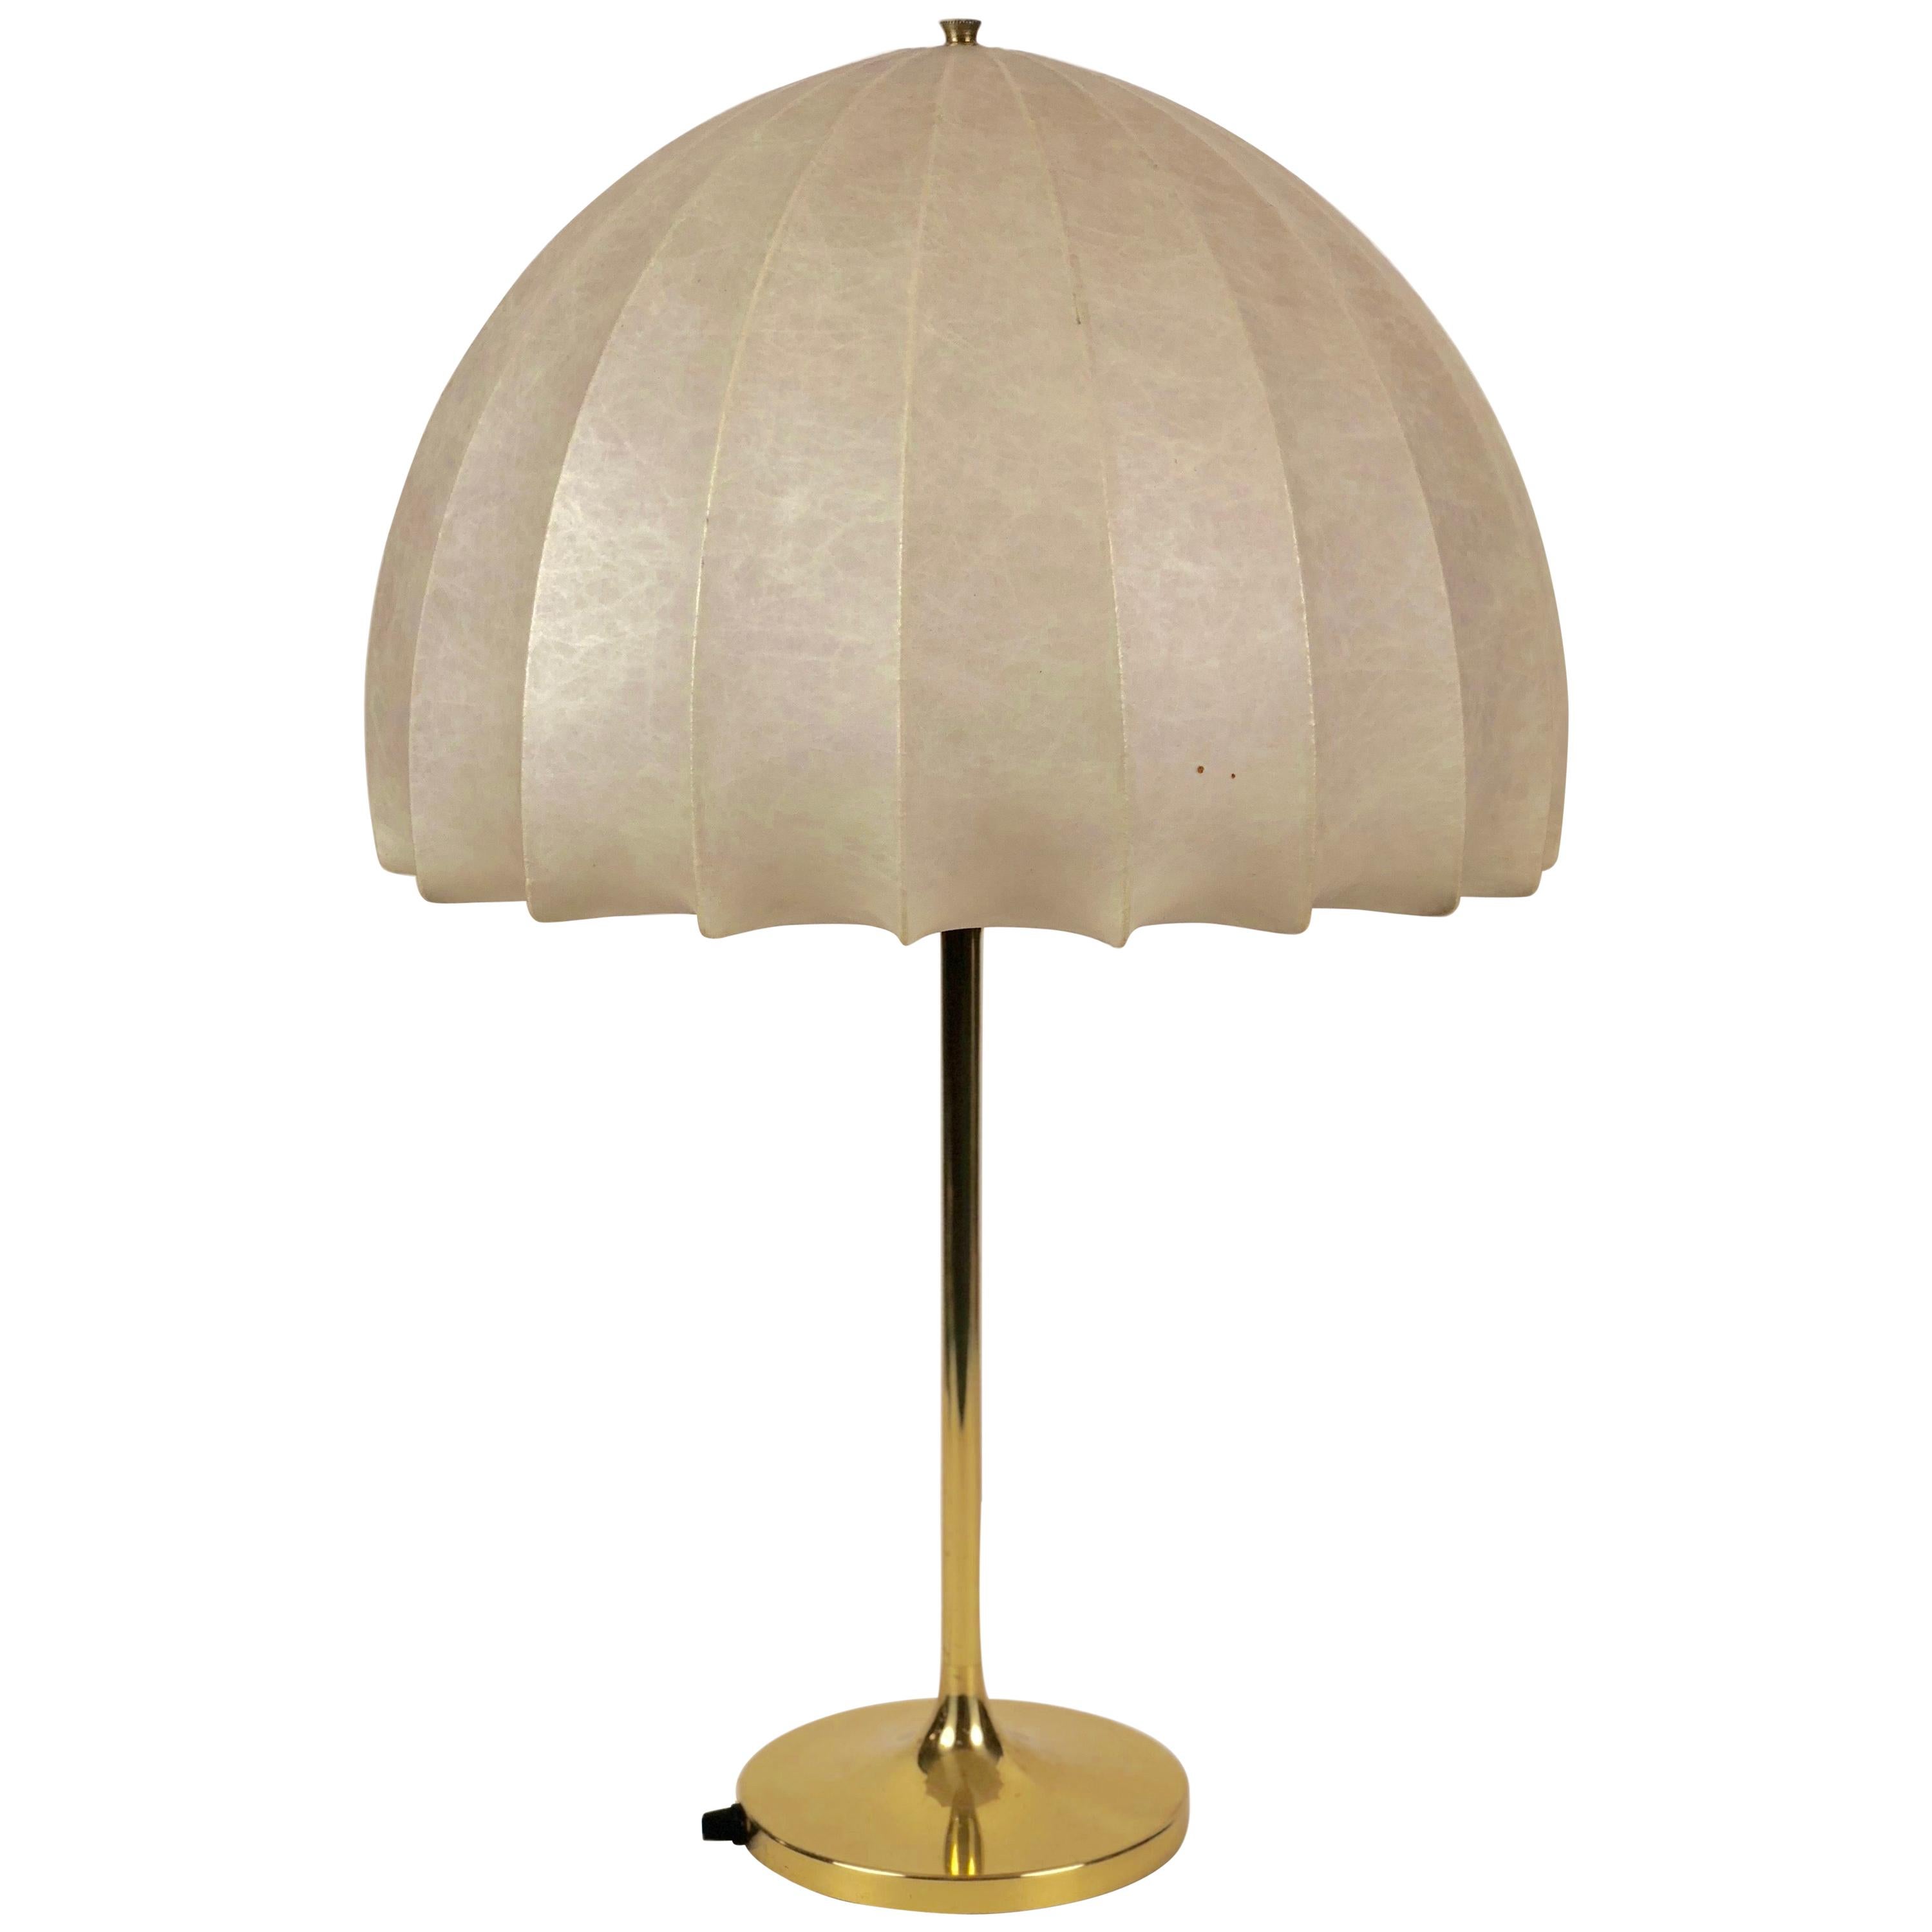 Lampe champignon des années 1970, fabriquée en Autriche